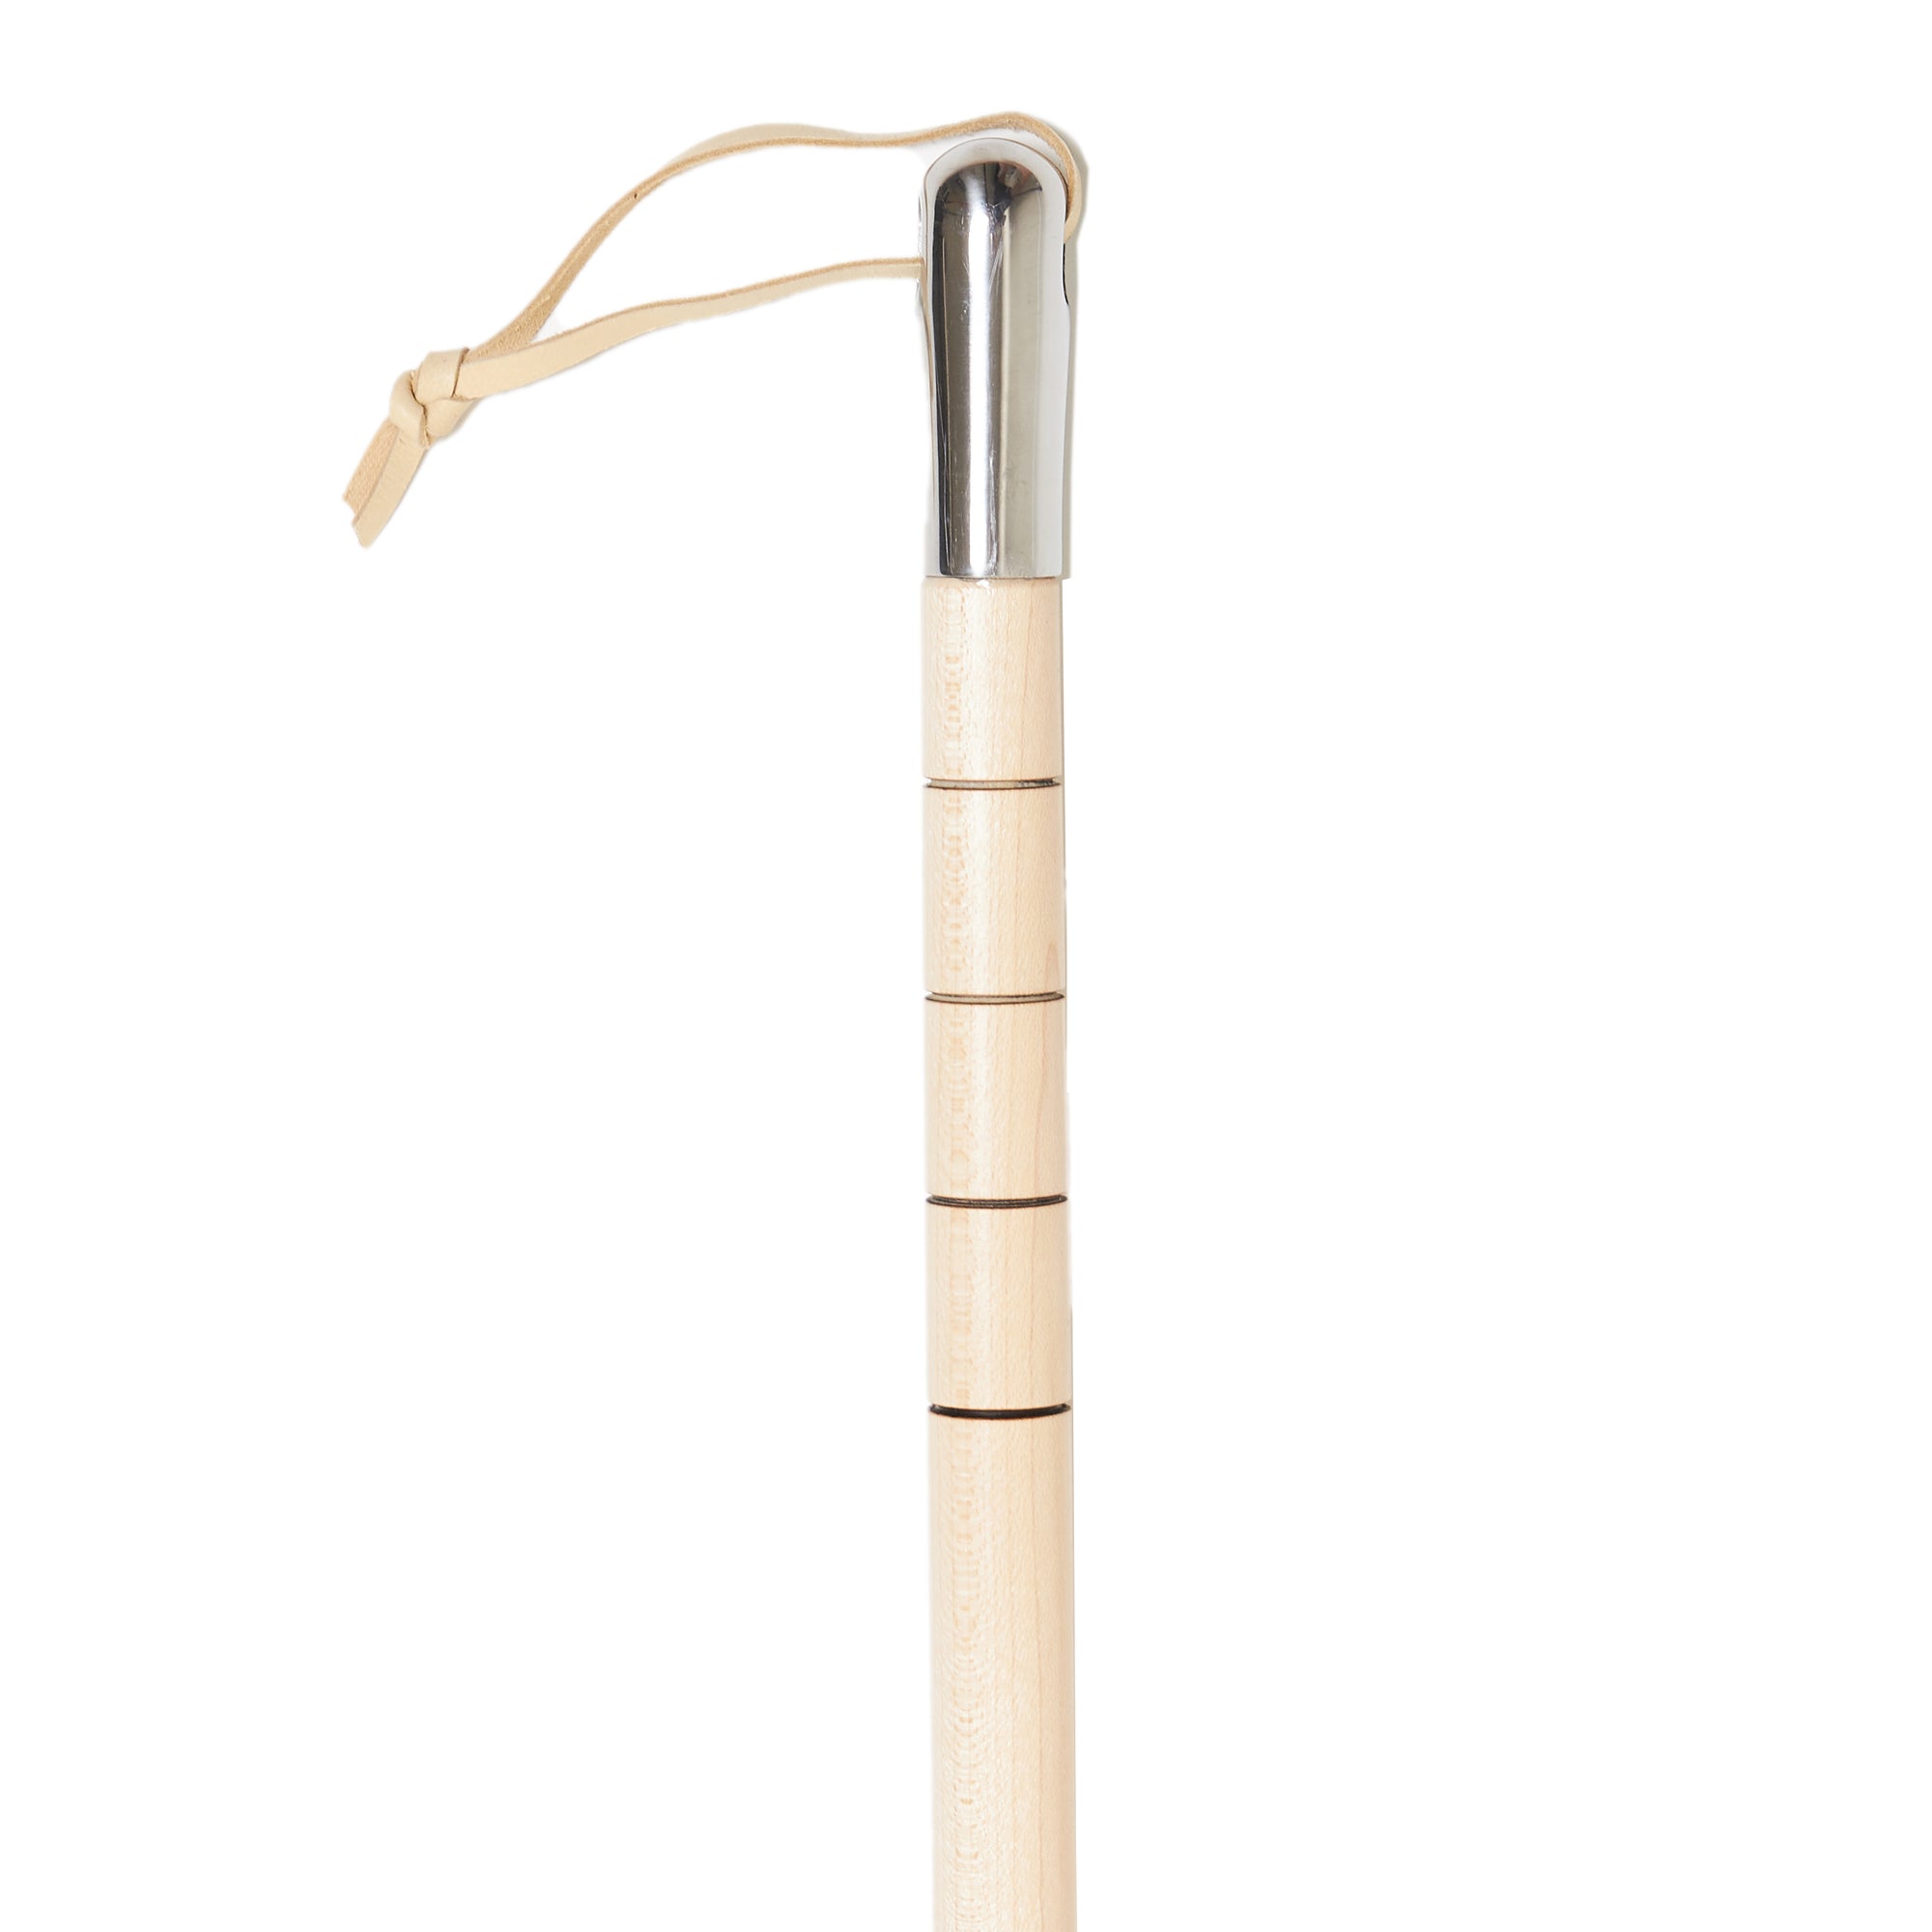 Hanger Project Maple Full-Length Shoe Horn